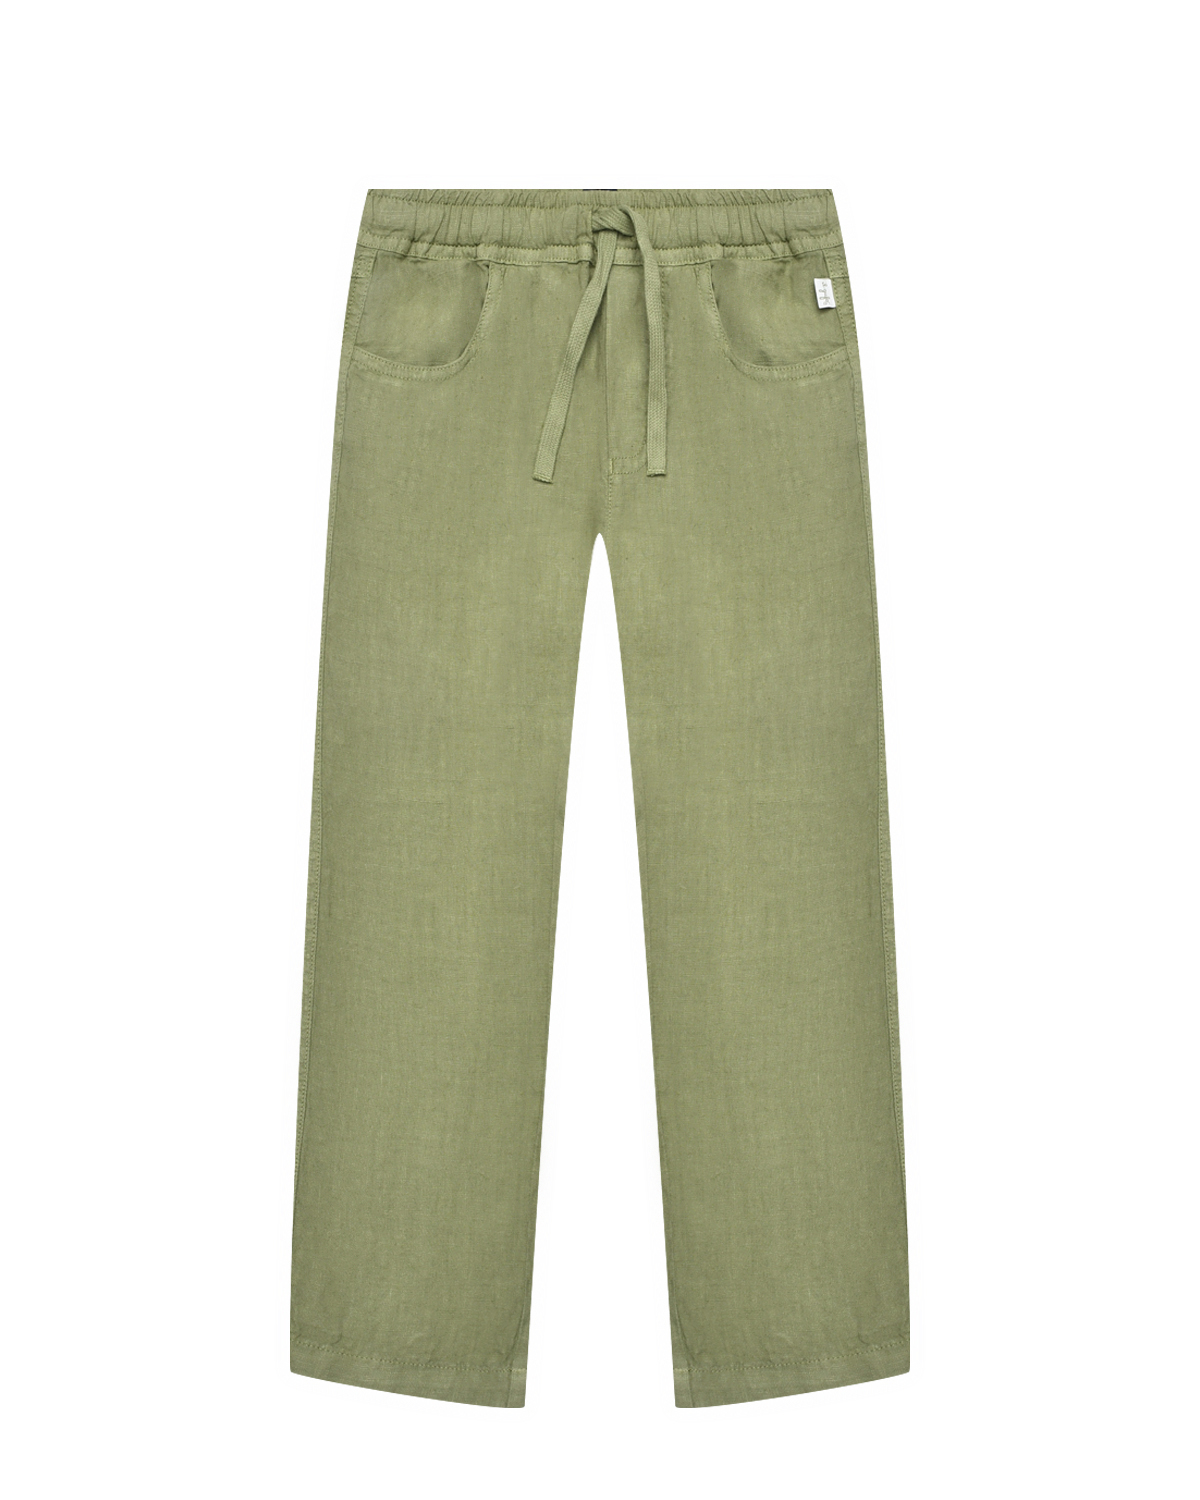 Льняные брюки цвета хаки IL Gufo, размер 128